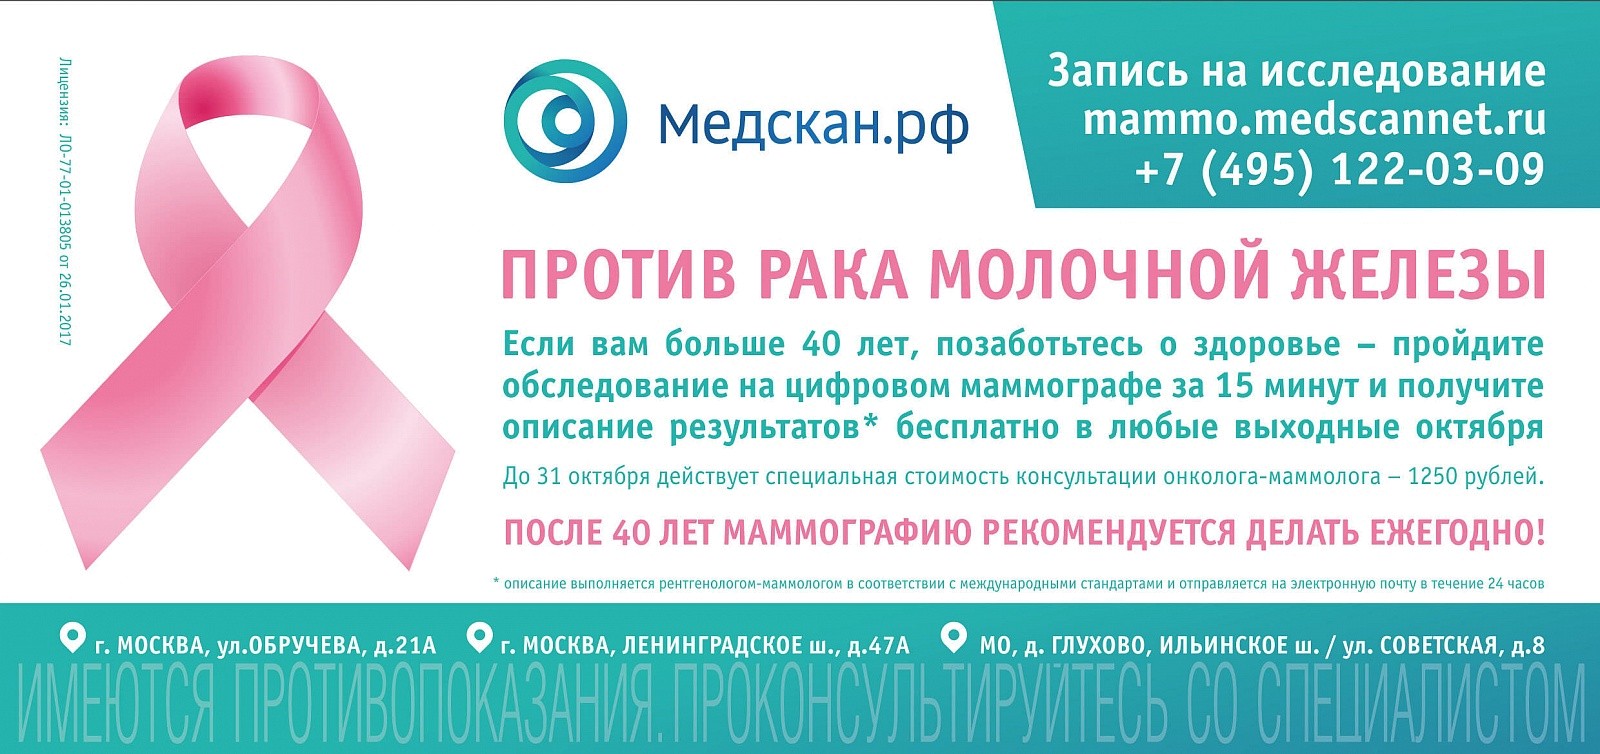 Маммография в московском. Маммография акция. Приглашение на маммографию. Записаться на маммографию. Маммография реклама.